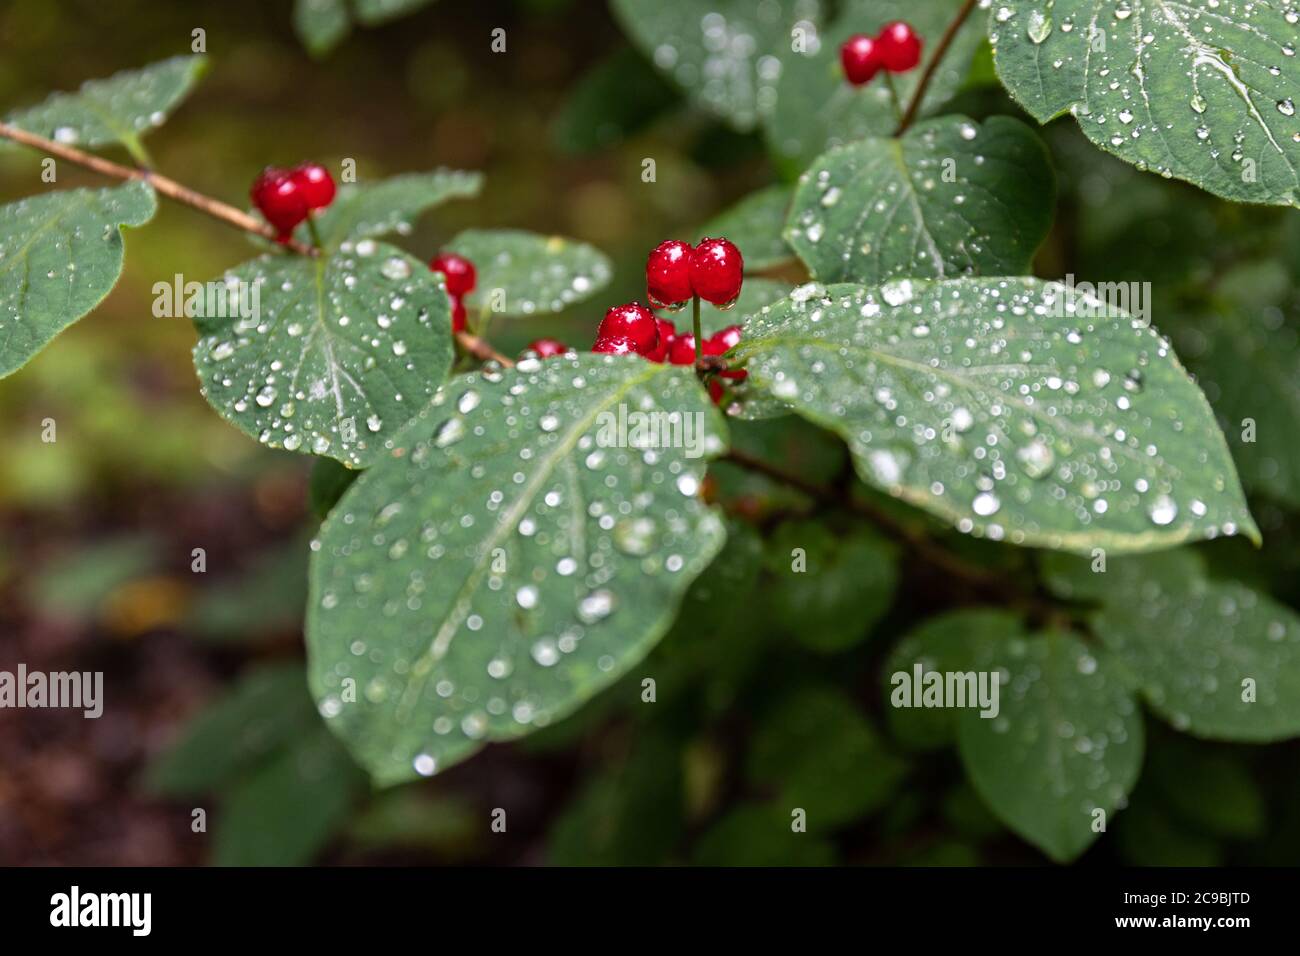 Rote Beeren von Lonicera xylosteum, allgemein bekannt als Fliege Geißblatt, Europäische Fliege Geißblatt, ZwergGeißblatt oder Fliege woodbine, an einem regnerischen Tag Stockfoto